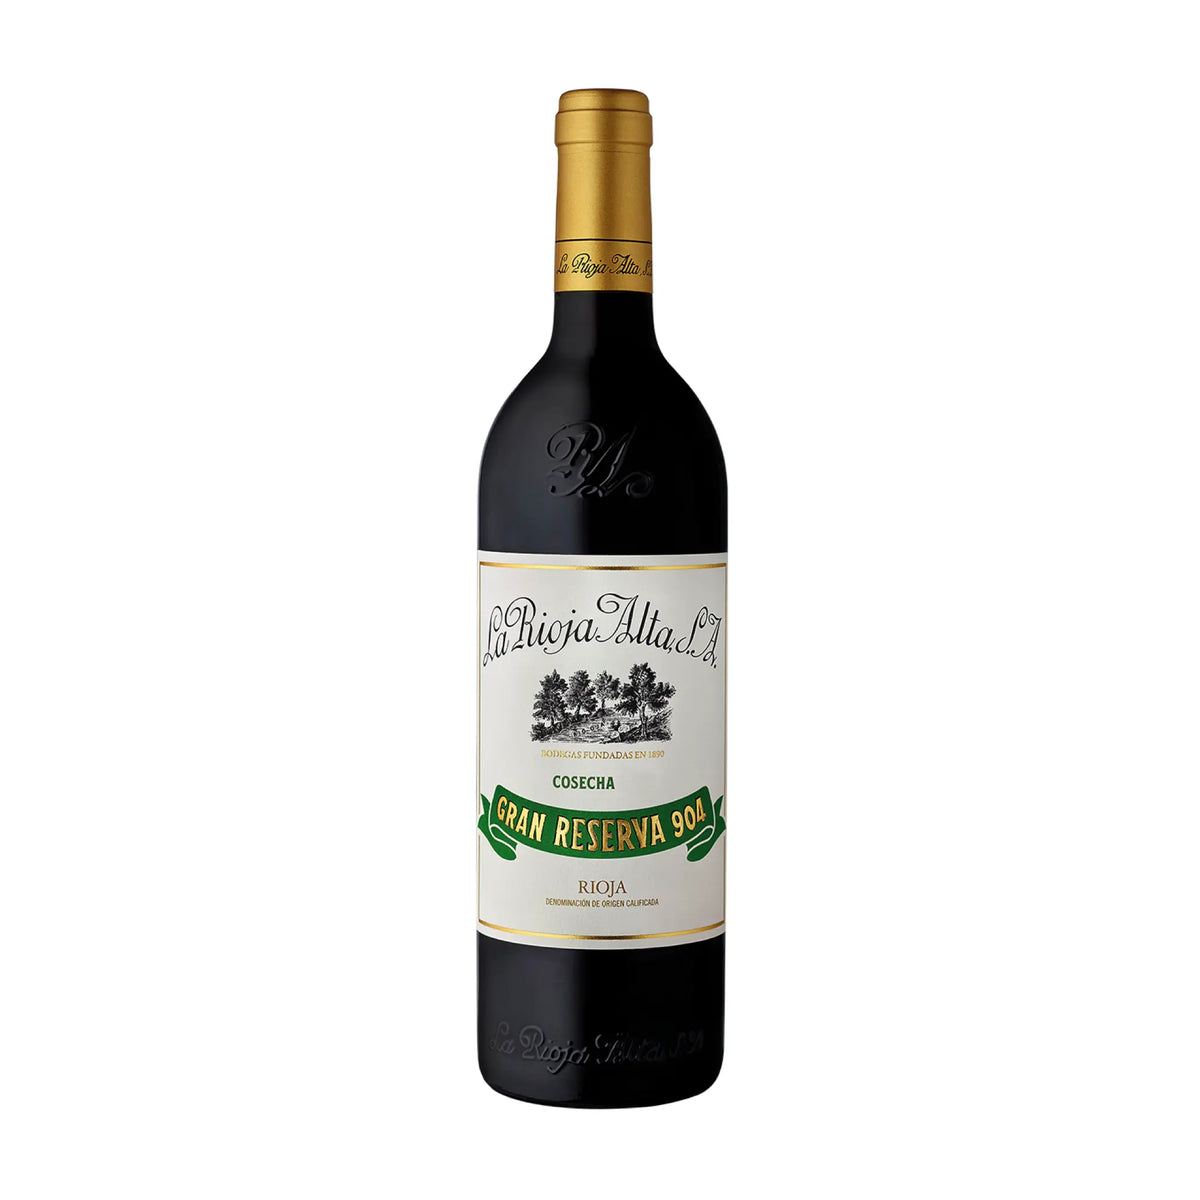 La Rioja Alta-Rotwein-Cuvée-Spanien-Rioja-2015 Gran Reserva 904 'Selección Especial' DOCa-WINECOM